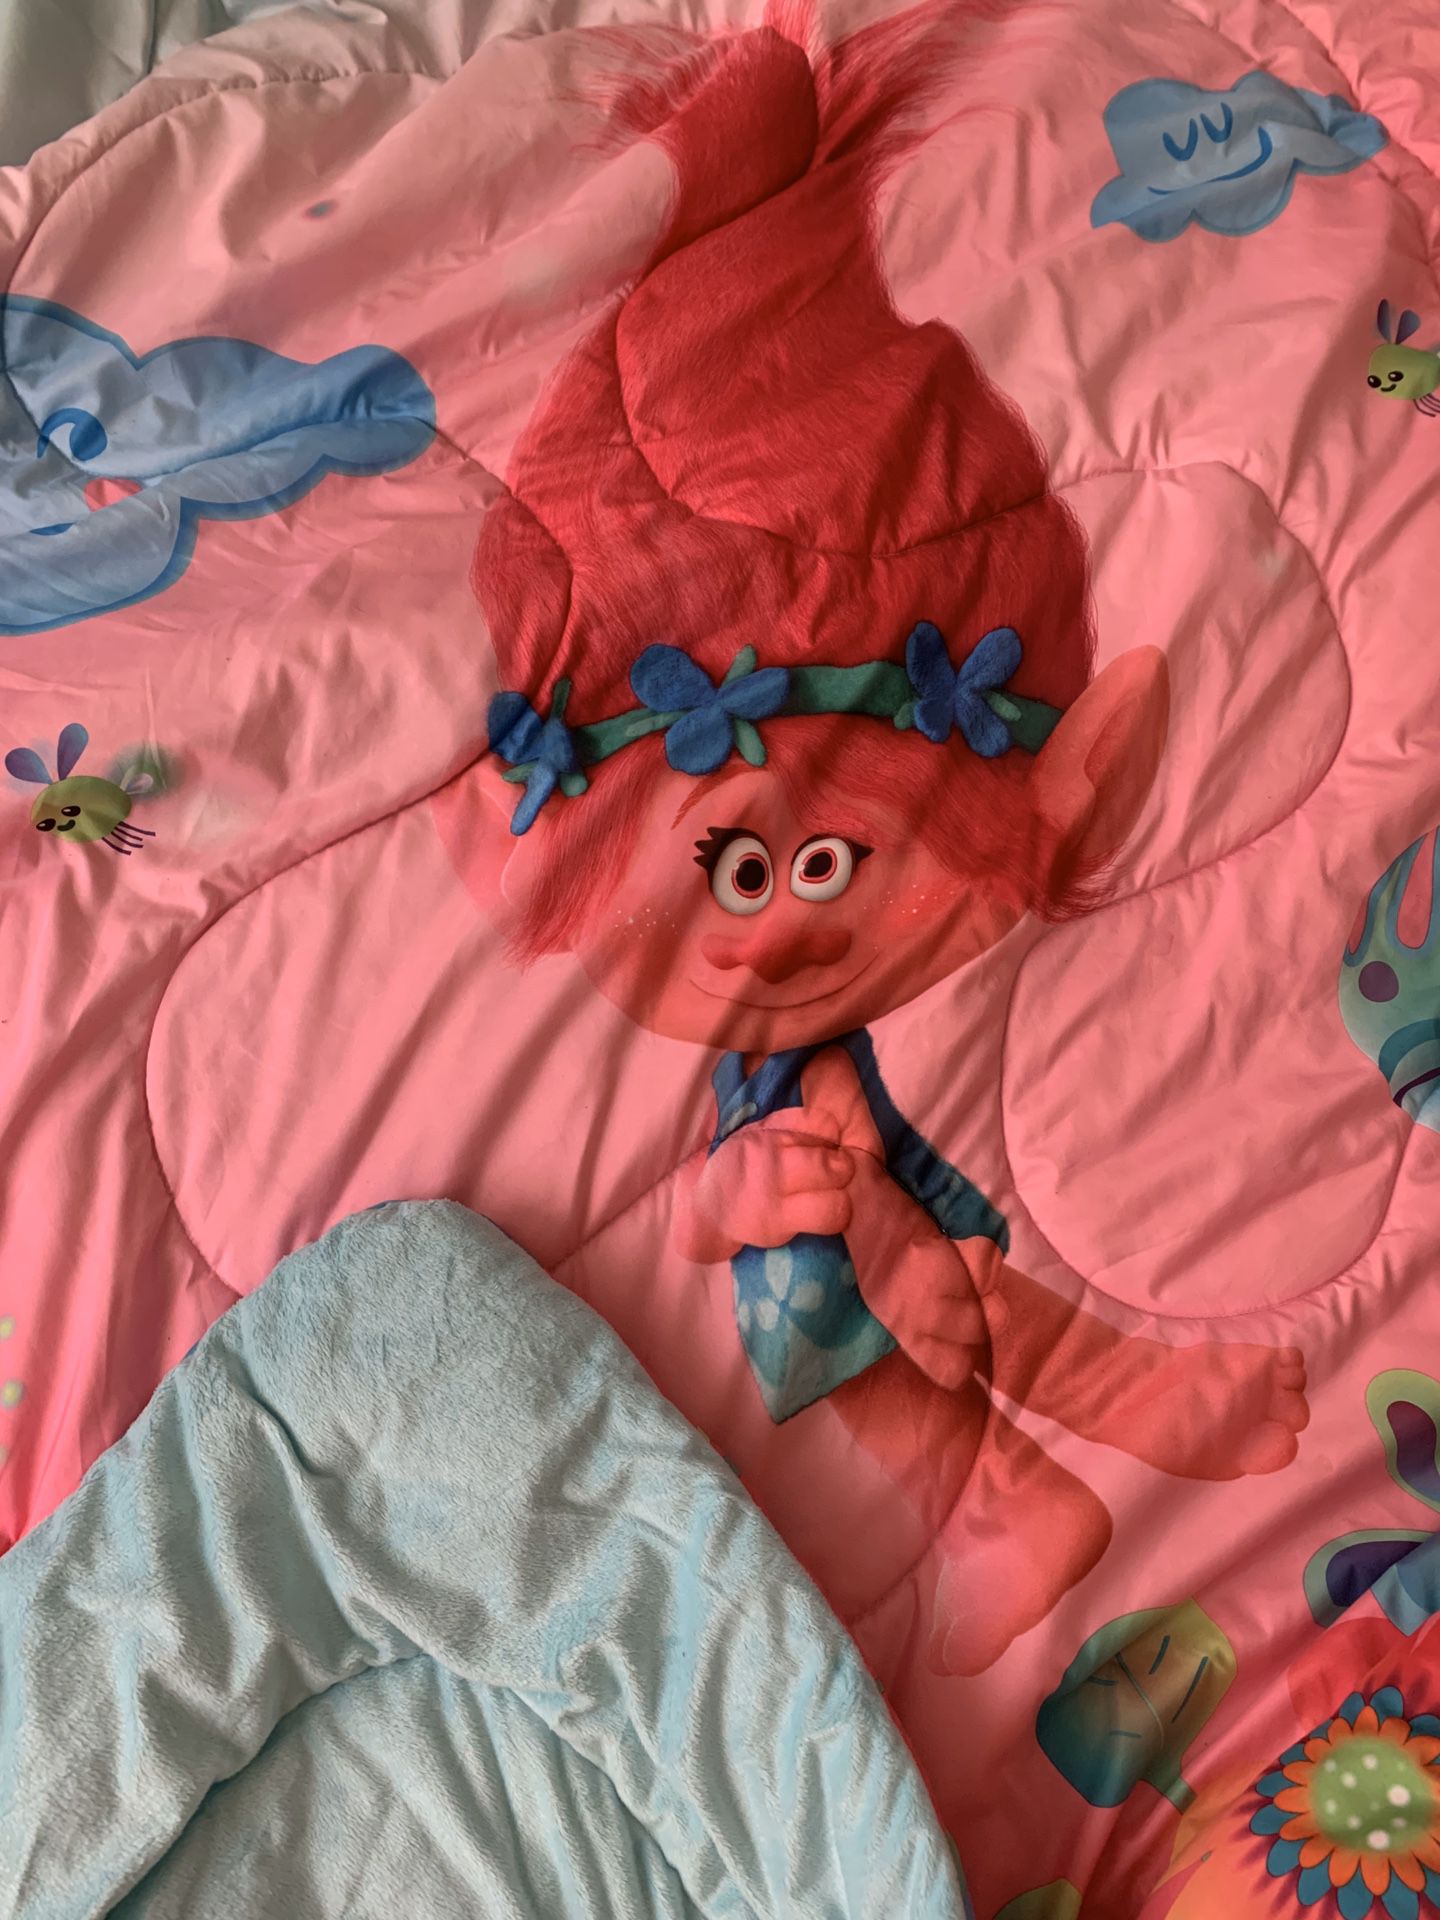 Twin Trolls- Poppy bed set with Poppy doll